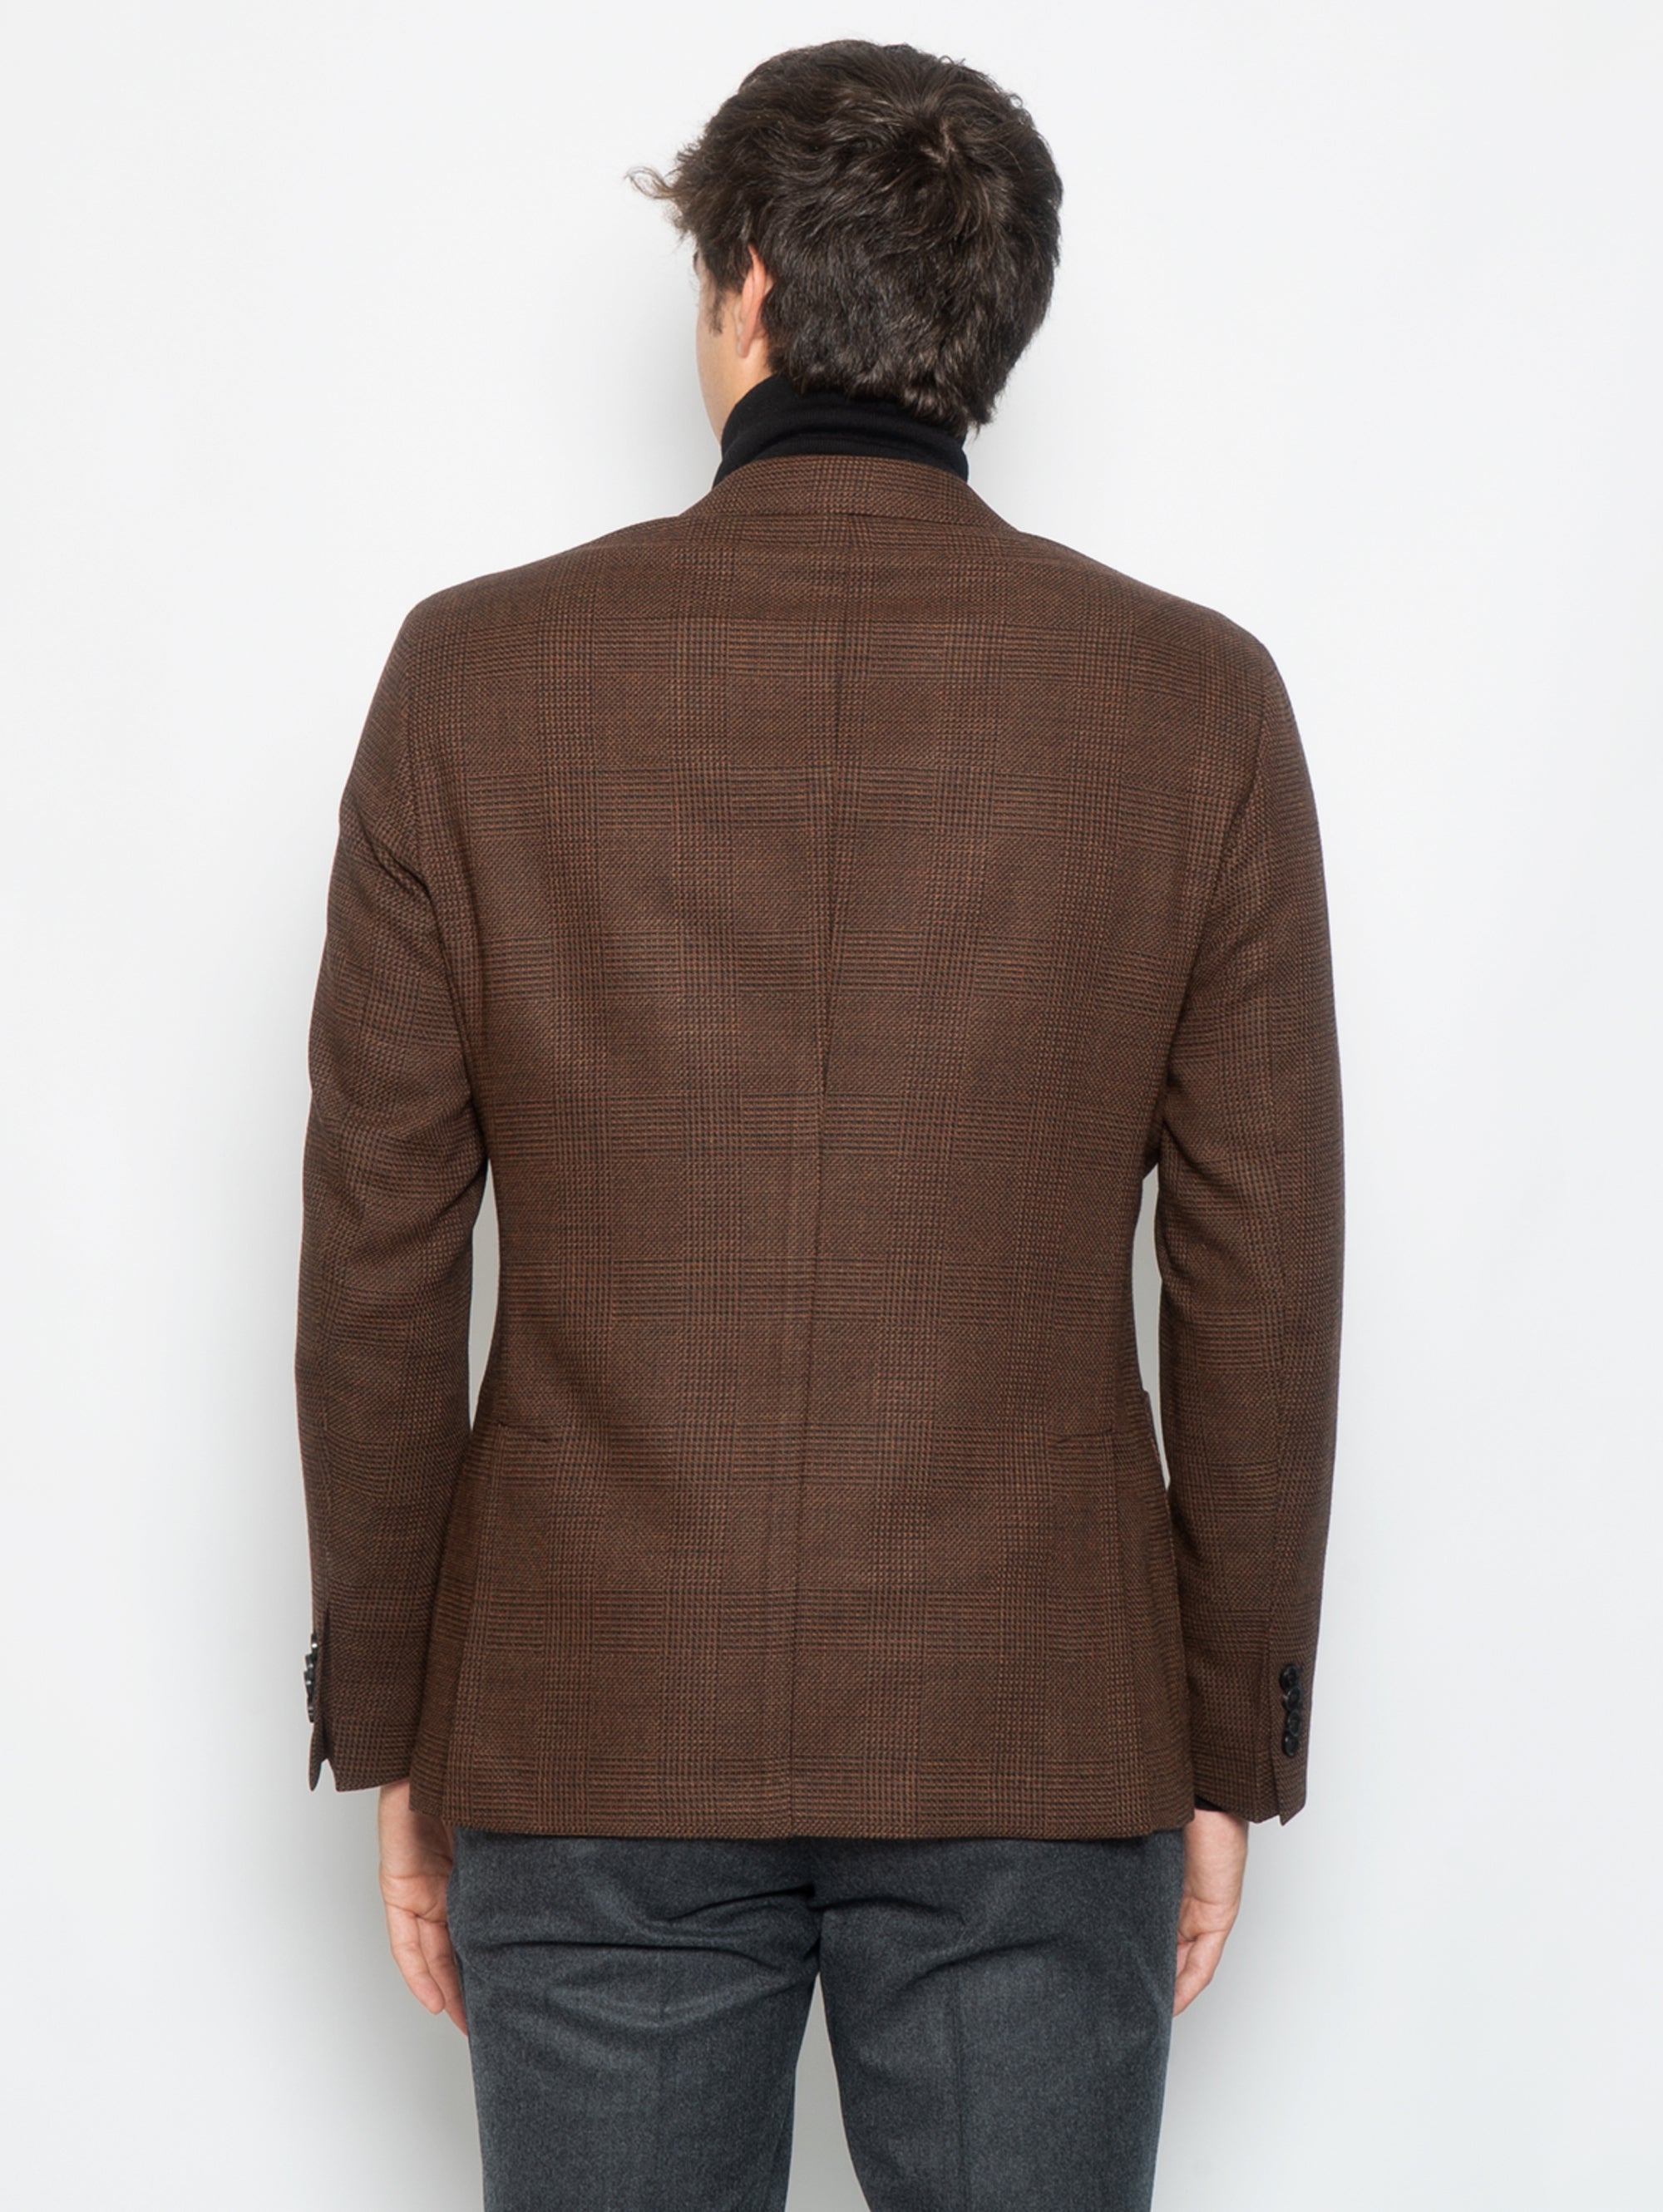 Prince of Wales Jacket in Brown Wool